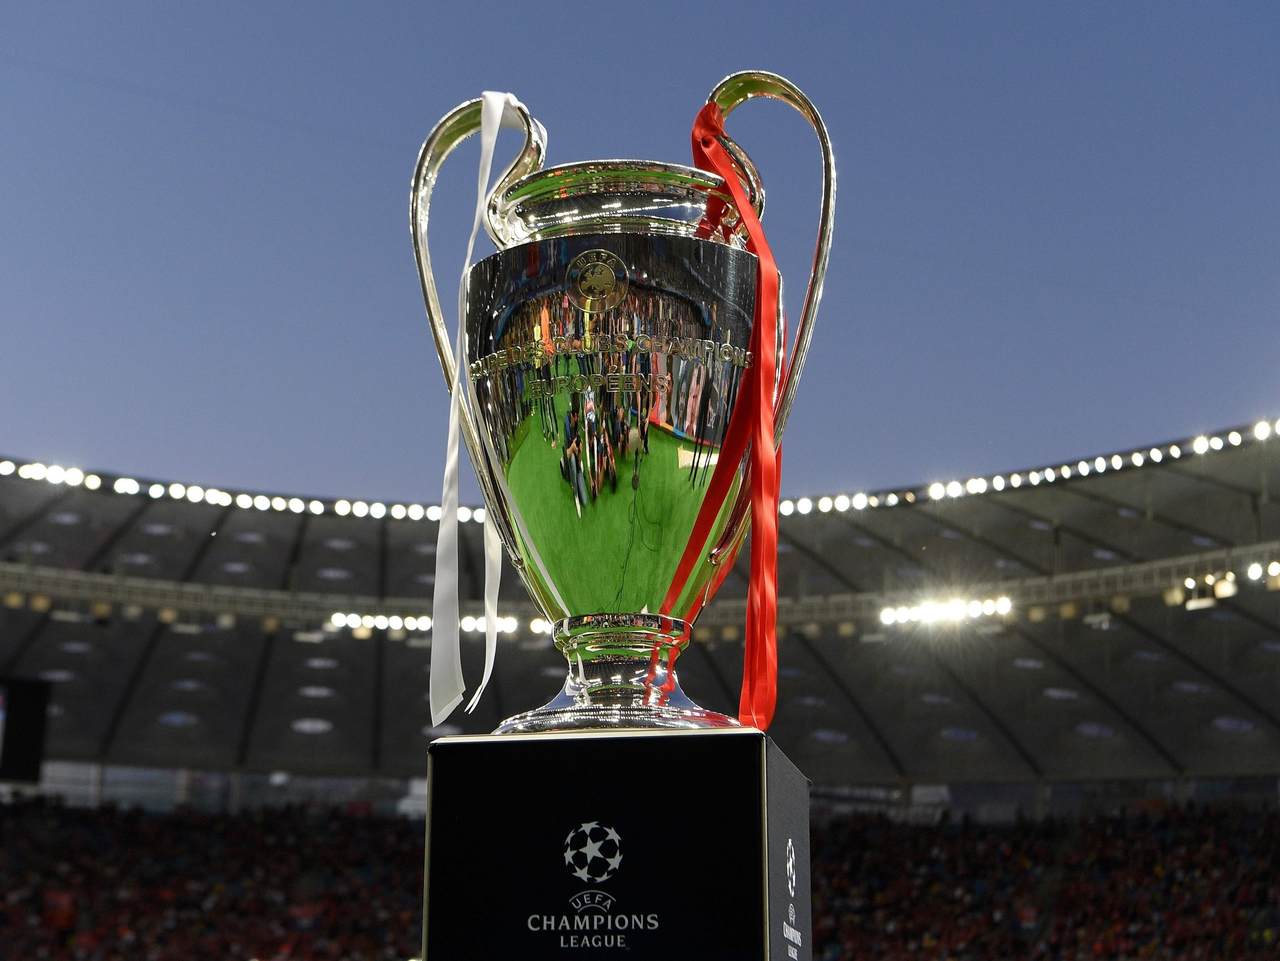 Uefa aprova mudanças no formato da Champions para 2024 com vagas extras por  desempenho